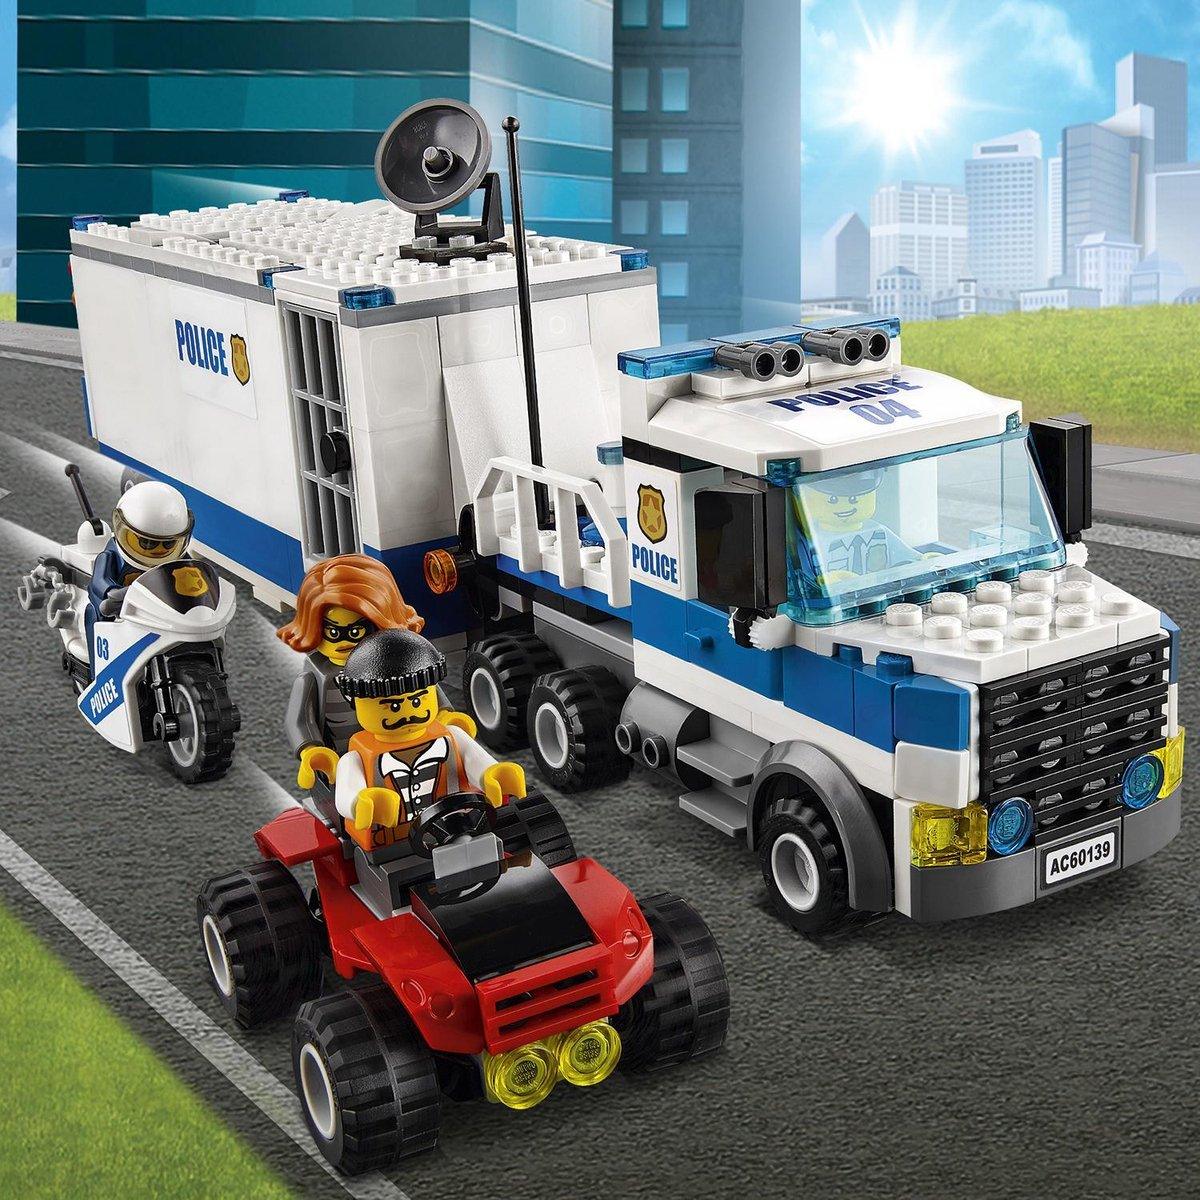 LEGO Politie Mobiele commandocentrale 60139 City | 2TTOYS ✓ Official shop<br>